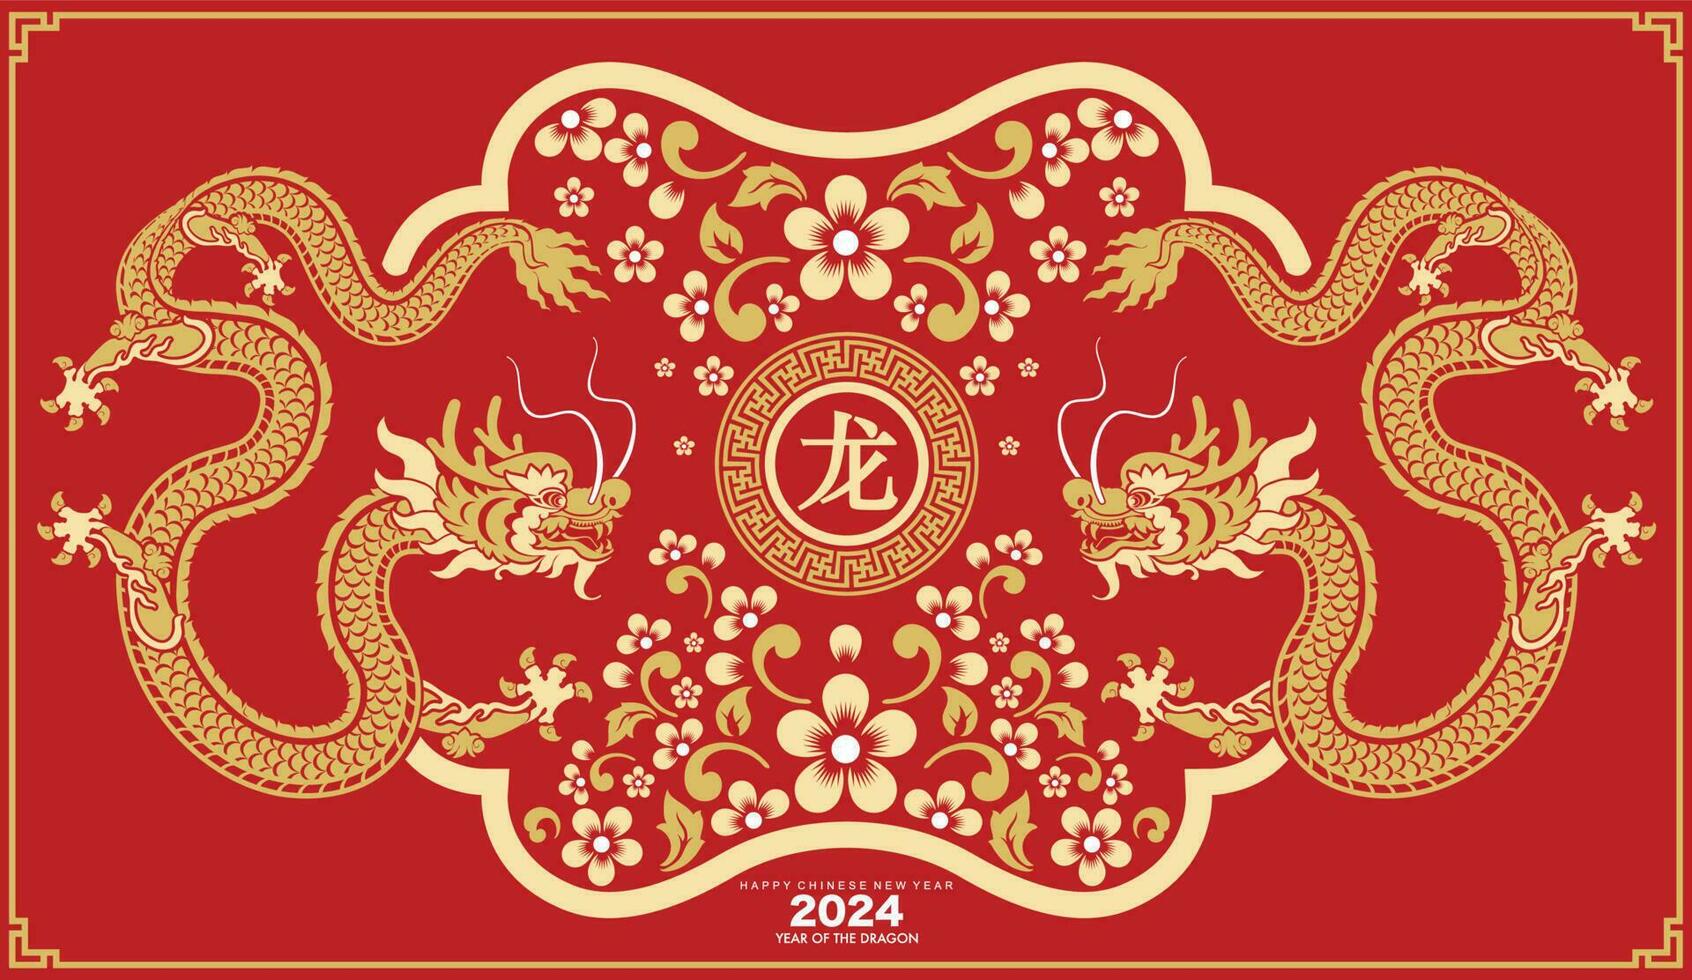 contento chino nuevo año 2024 el continuar zodíaco firmar vector